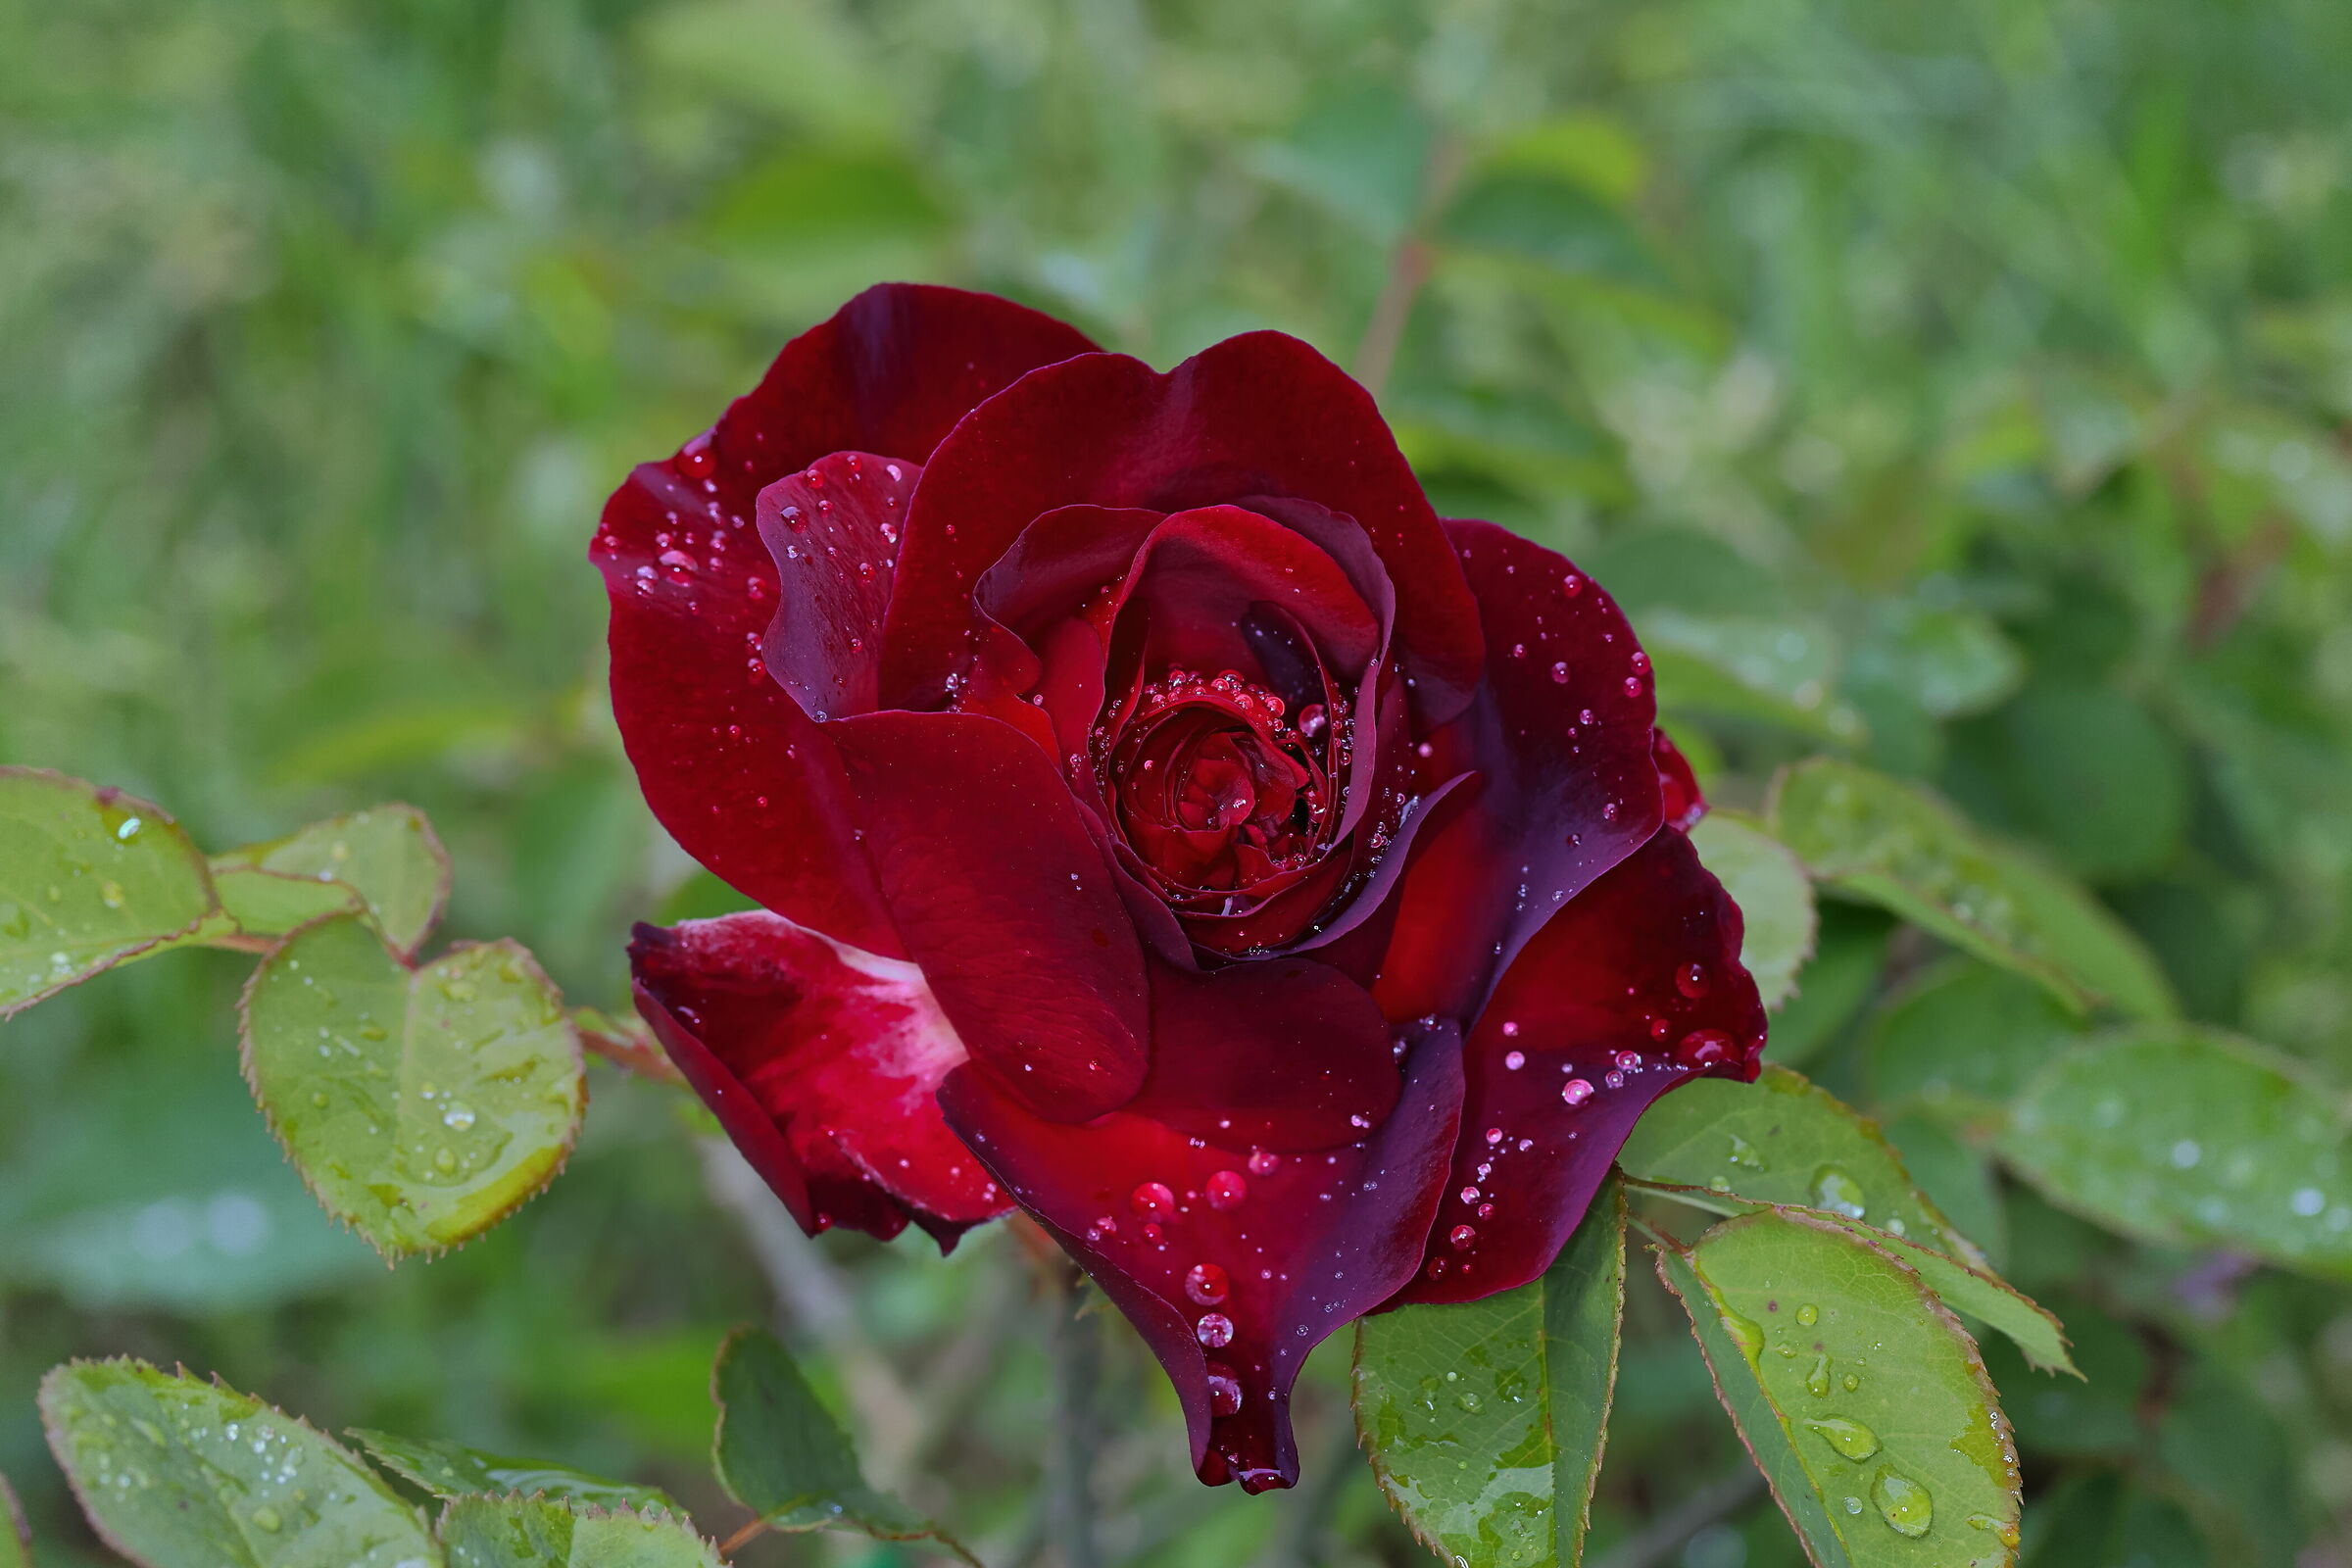 Classica rosa rossa bagnata dalla pioggia...